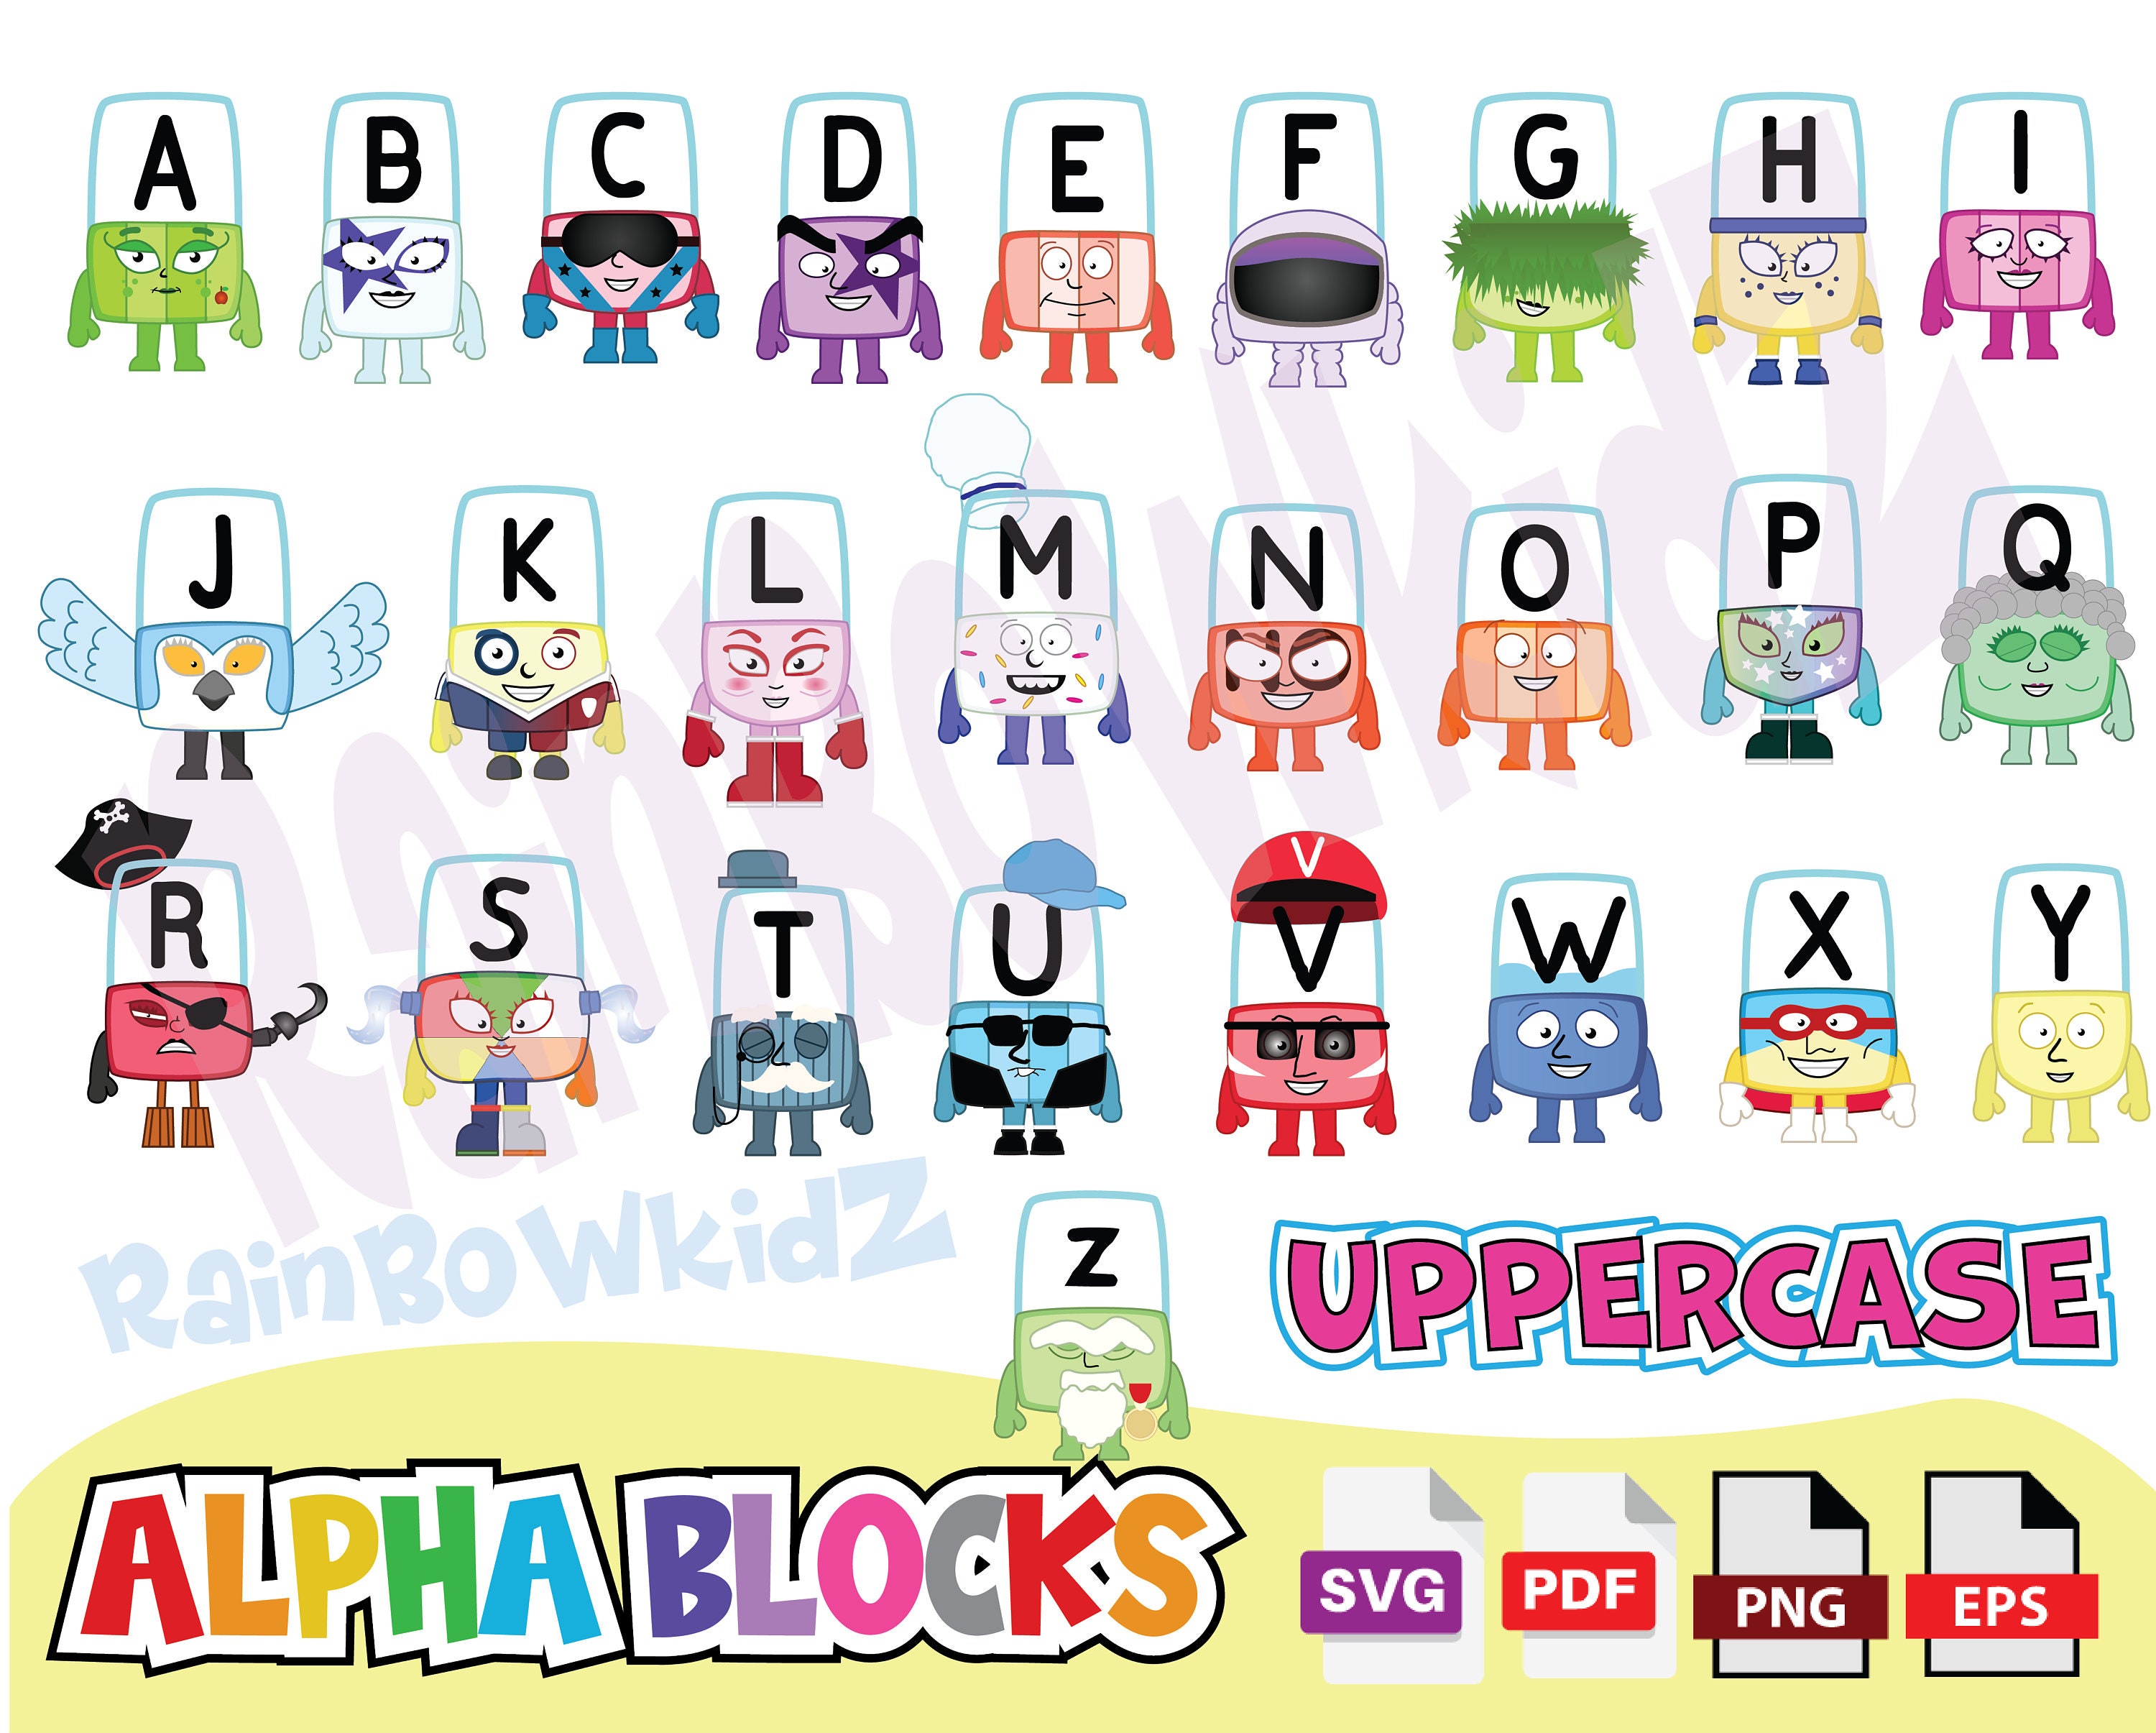 Alphablocks uppercase letters